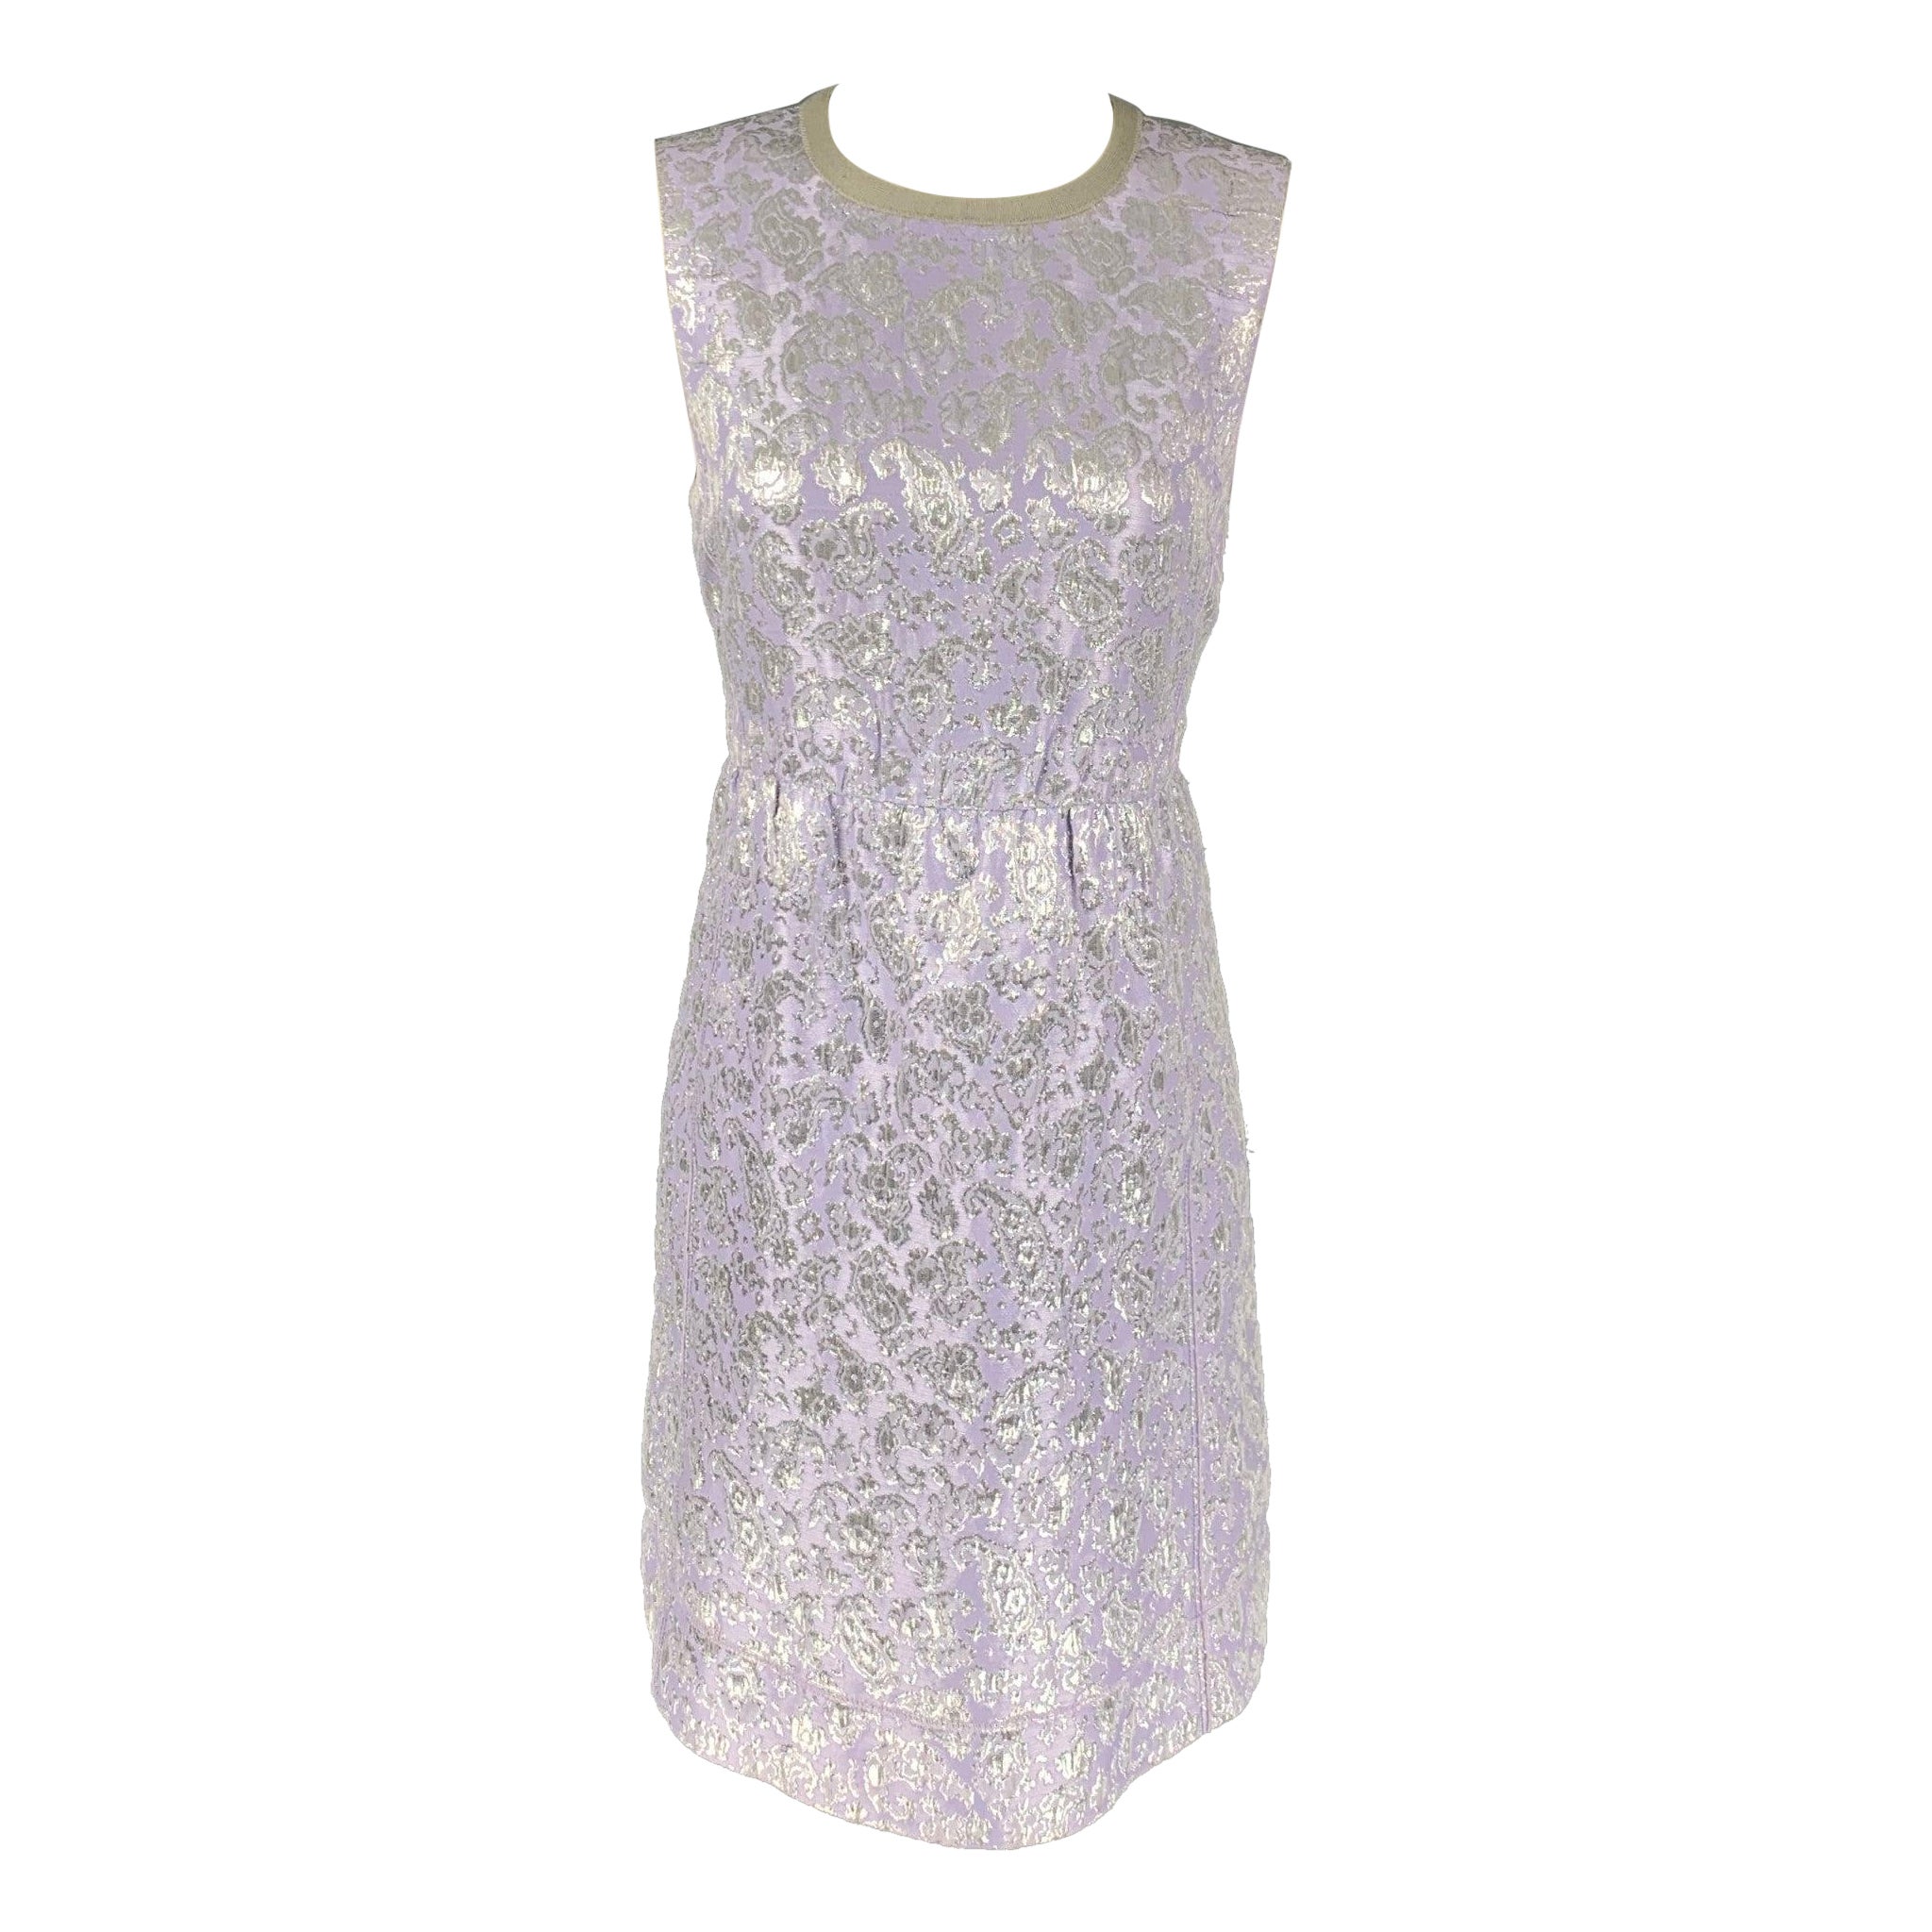 MARC JACOBS Size 6 Lavender & Silver Acetate Blend Jacquard Sheath Dress For Sale